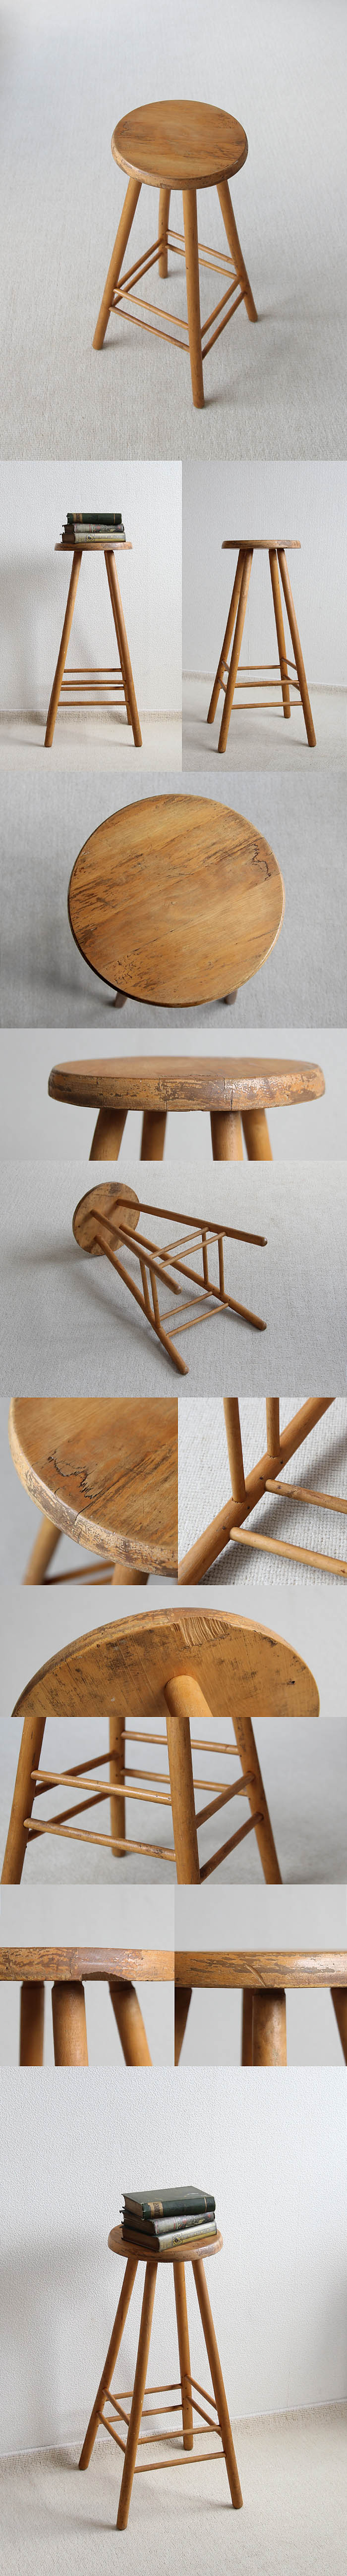 イギリス アンティーク ハイスツール 木製椅子 カントリー 花台 インテリア 家具「ナチュラル」V-921